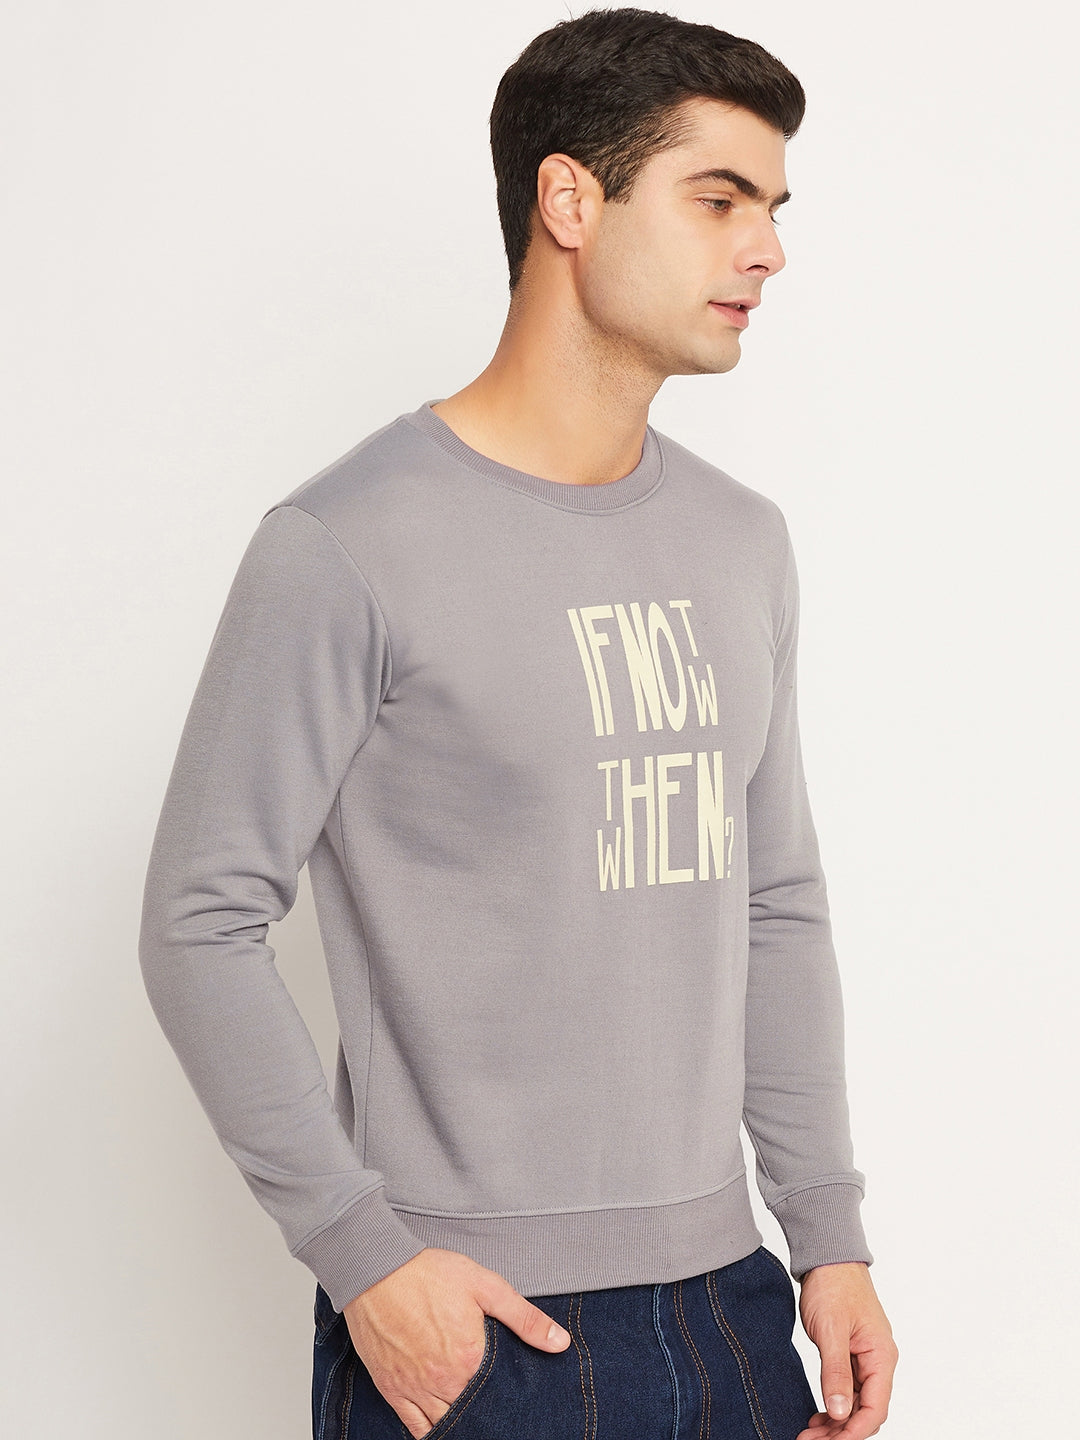 Men's Sweatshirt Grey